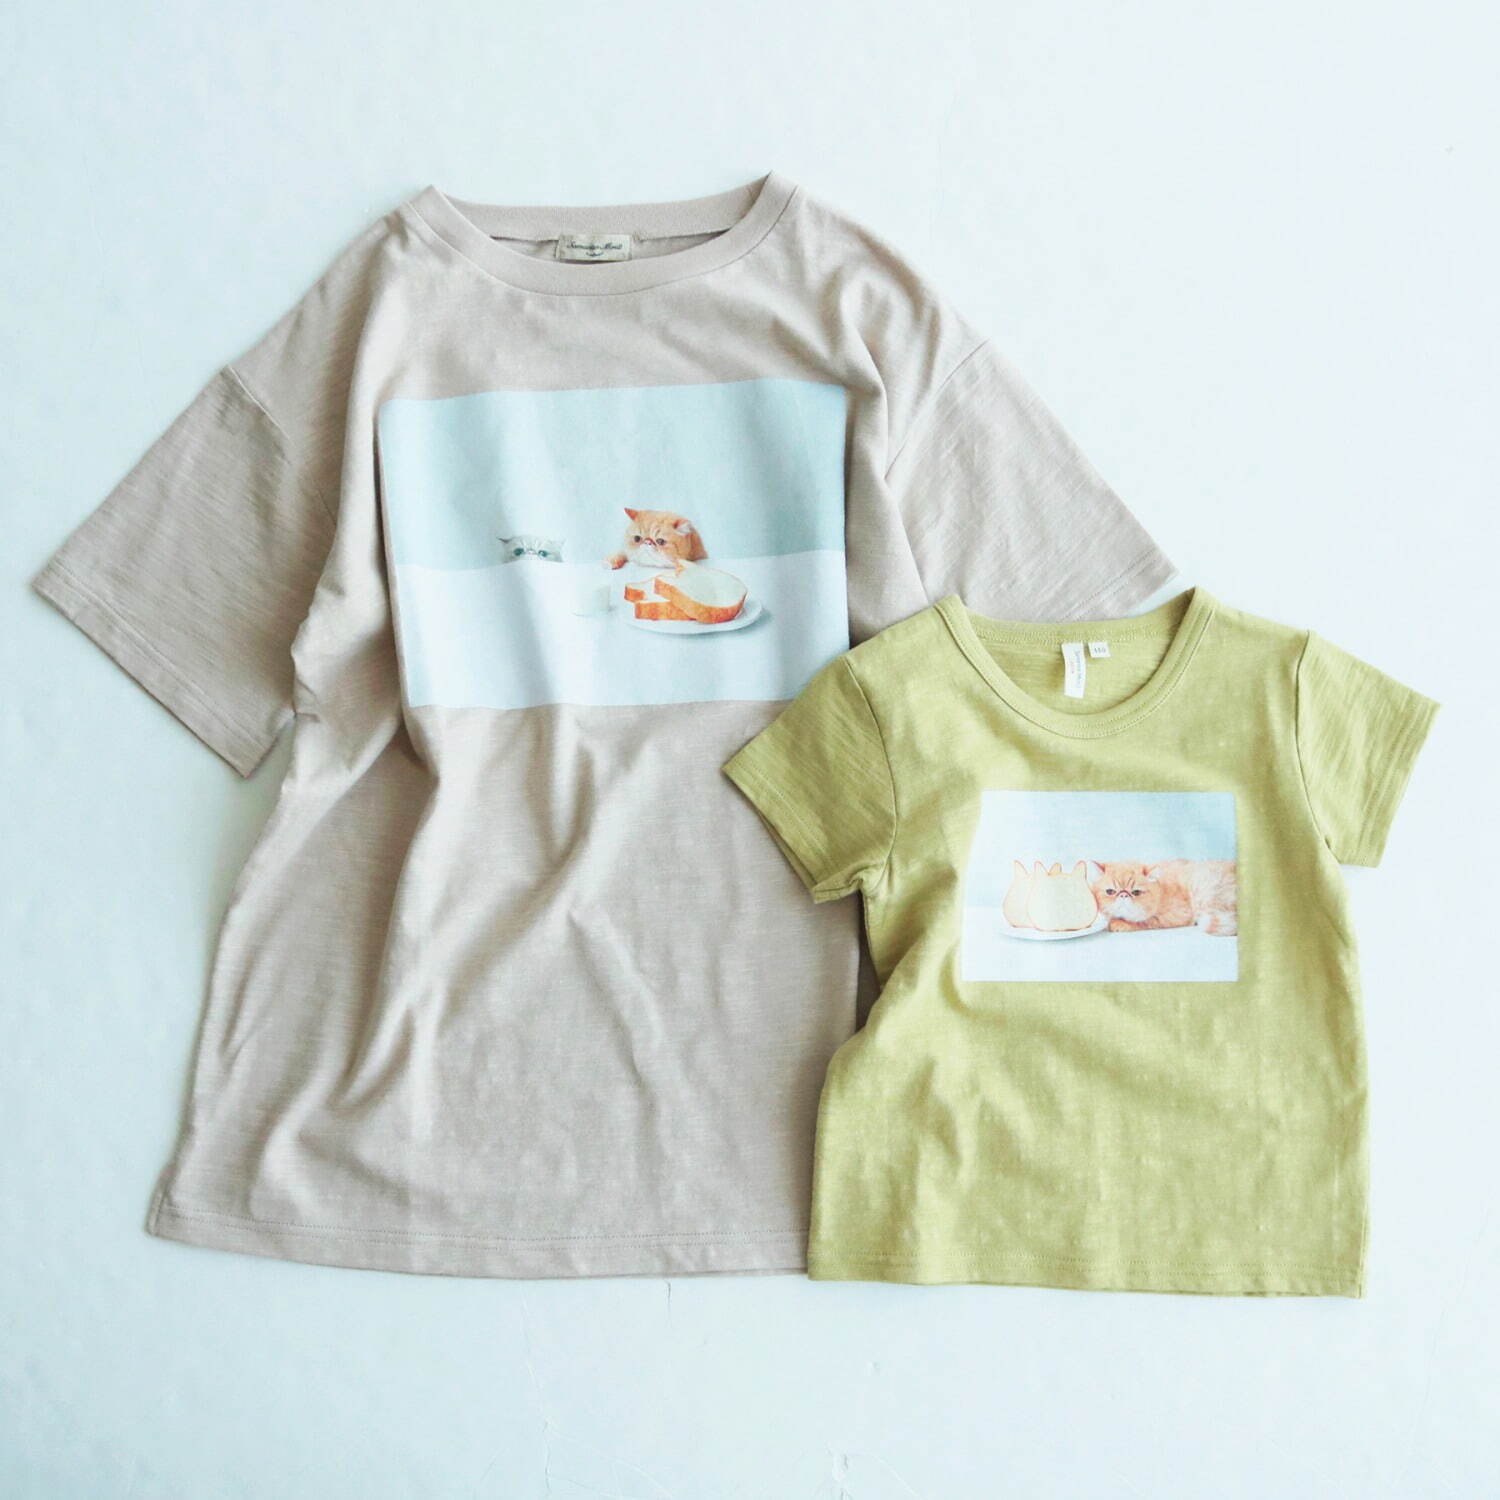 左から)フォトプリント半袖Tシャツ 3,190円(税込)
フォトプリントTシャツ 2,530円(税込)